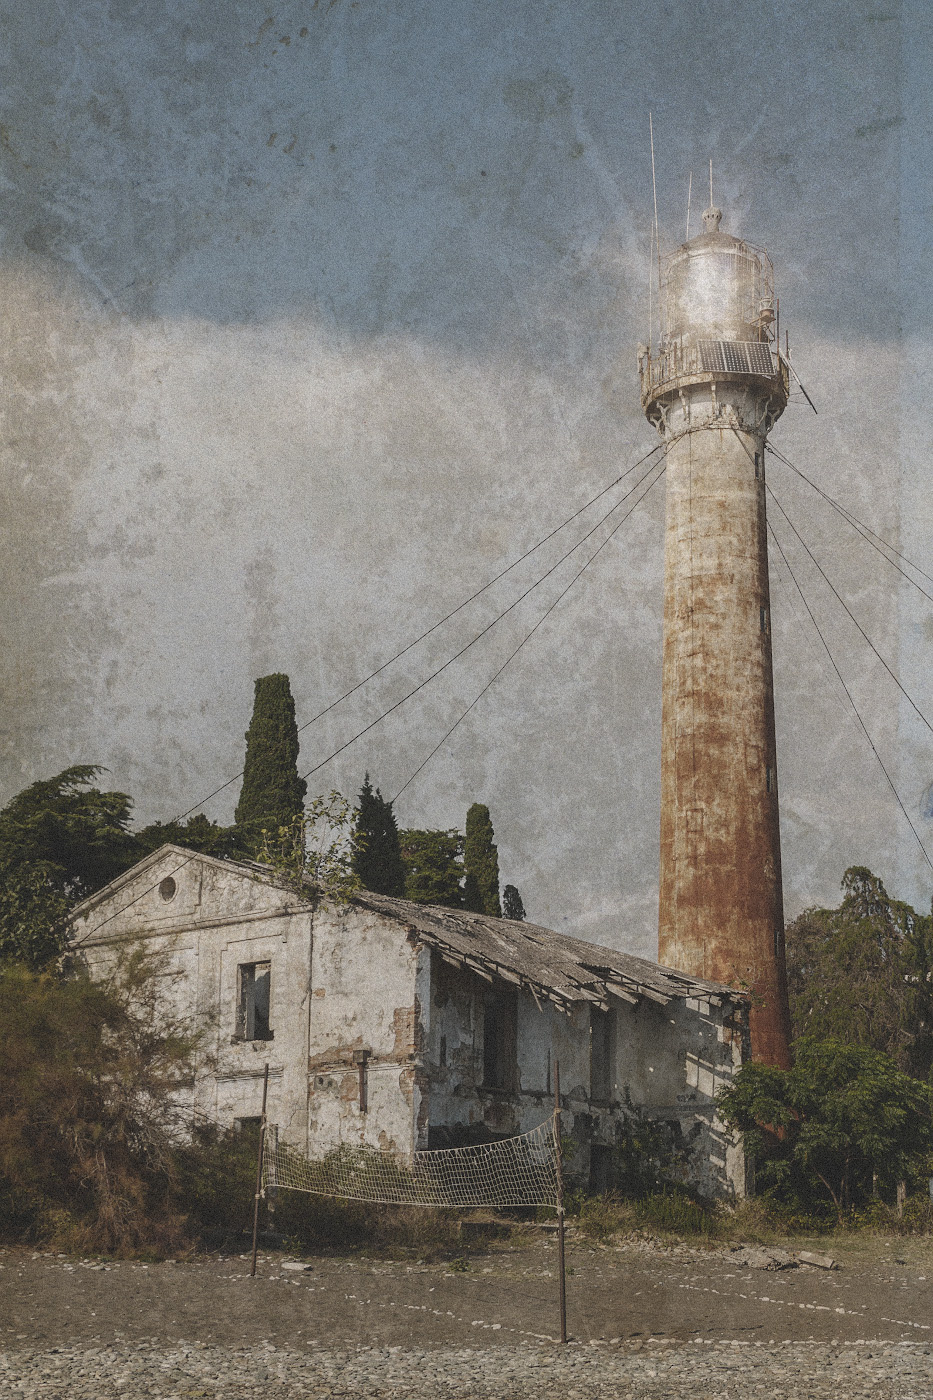 Старый маяк абхазия старый заброшенный ржавый сухумский маяк достопримечательность ветхий дом берег